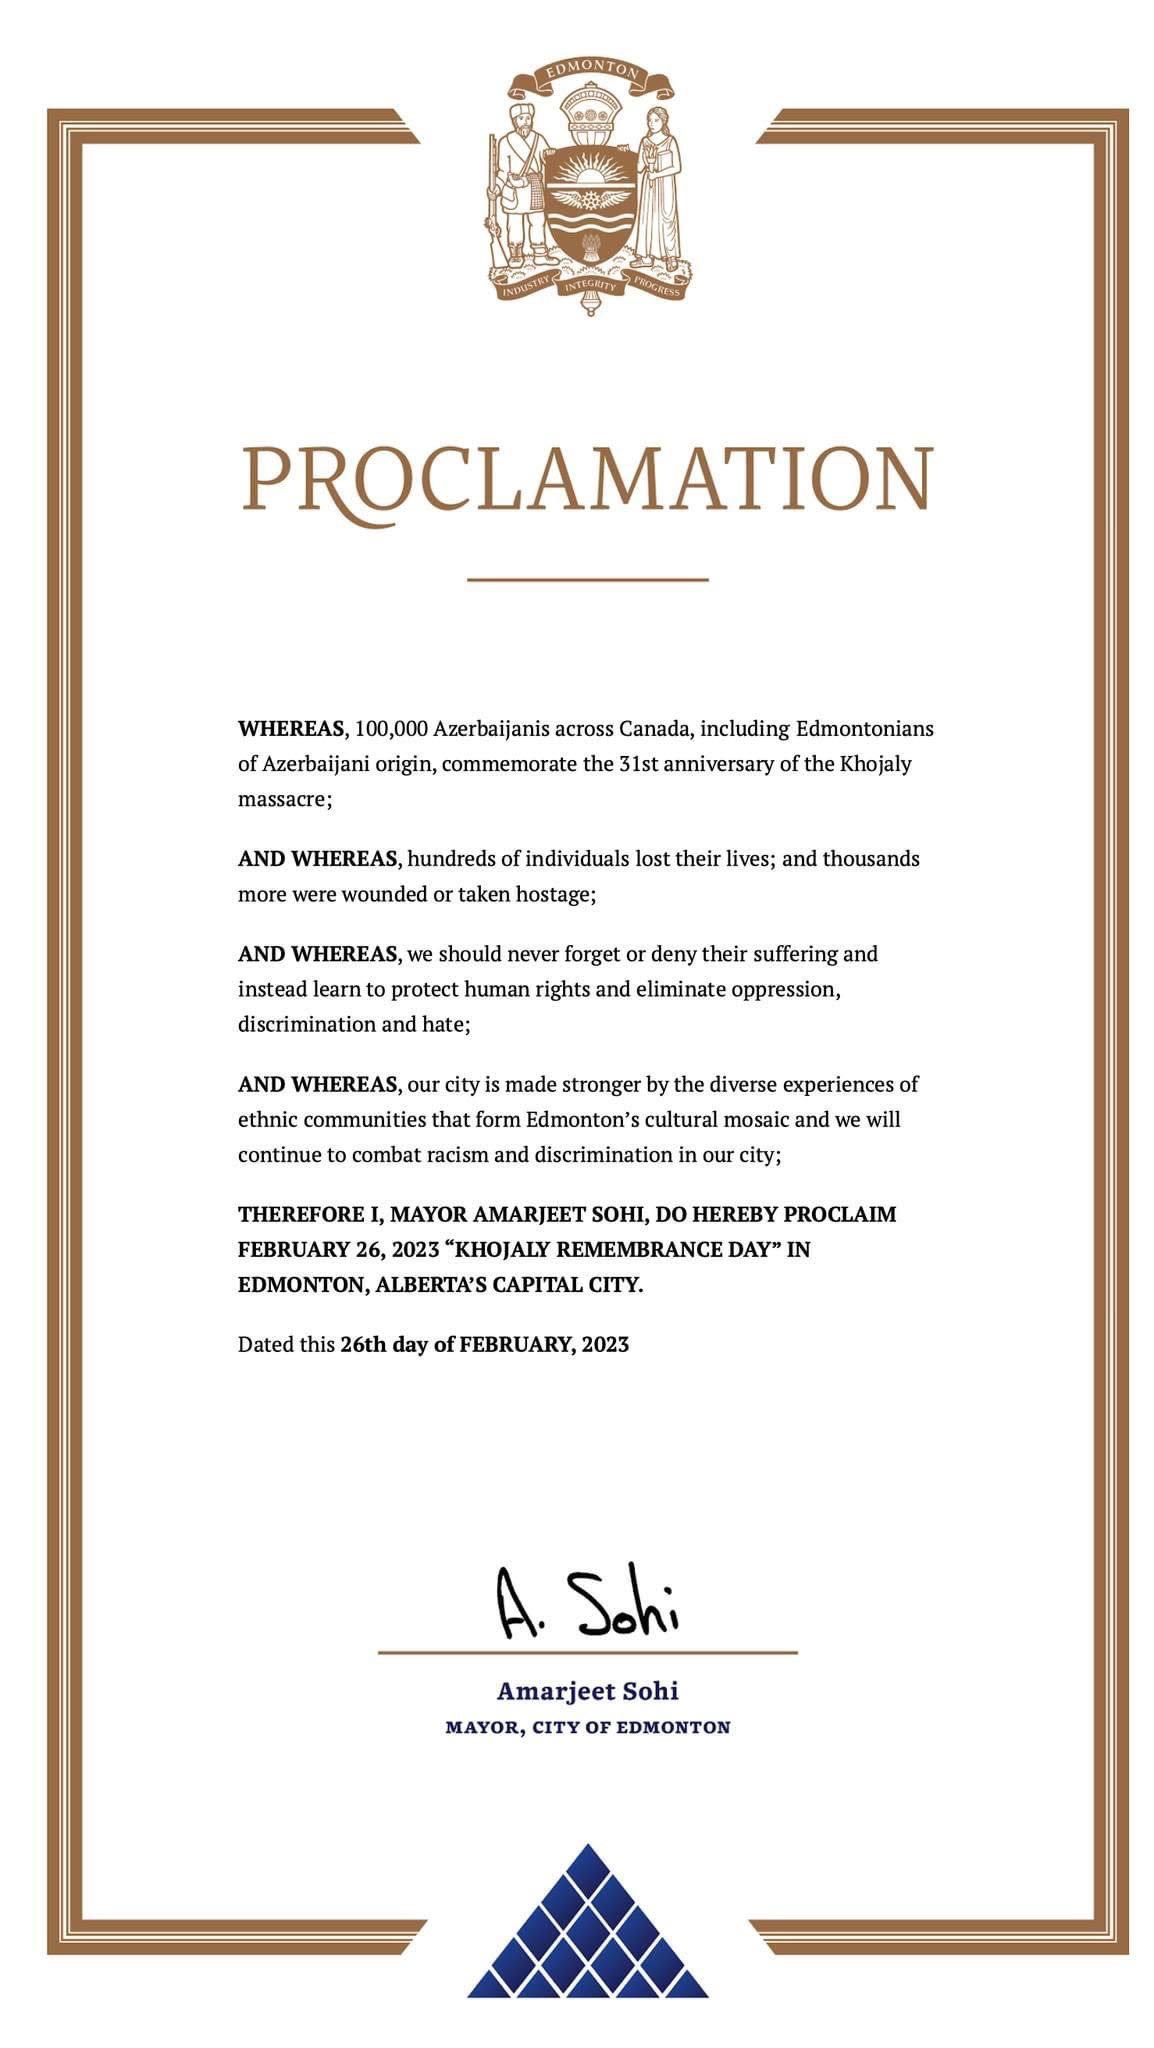 Edmonton proclaimed February 26 Khojaly Remembrance Day 